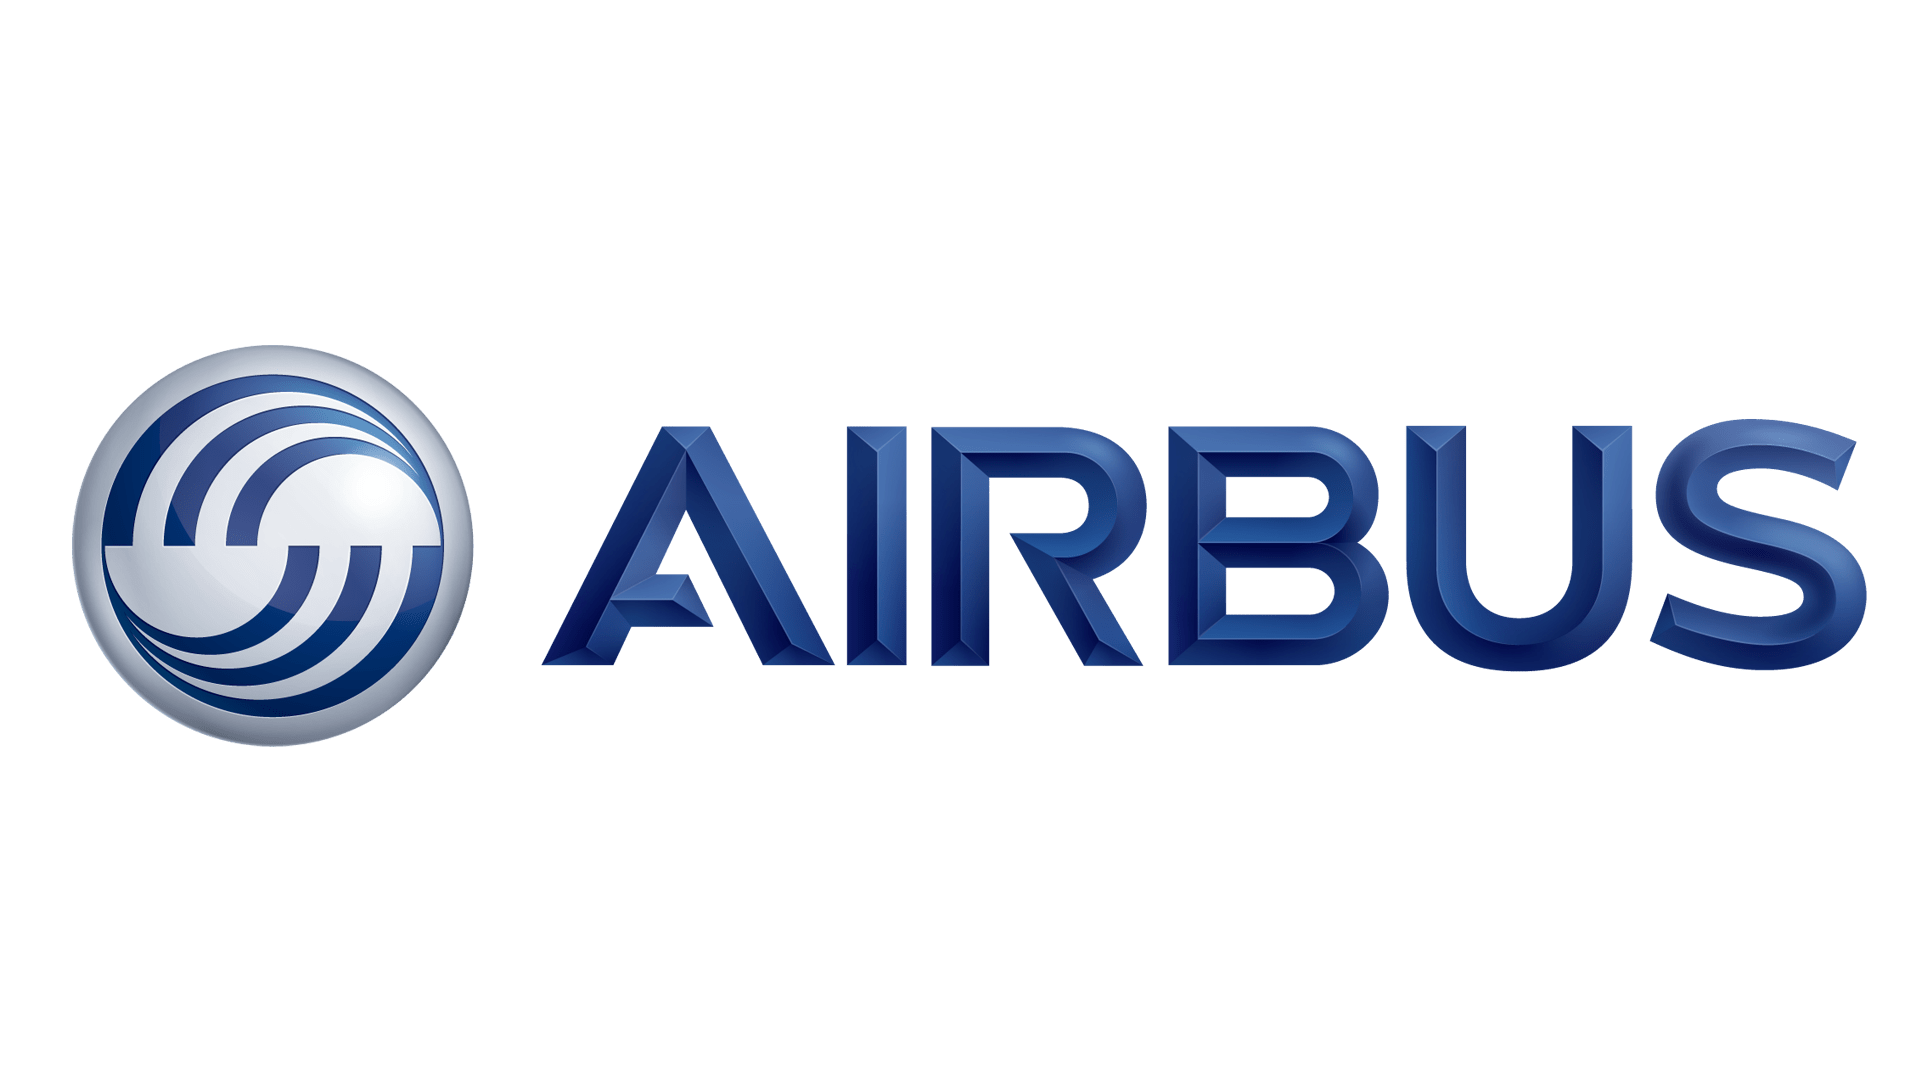 Geschichte und Bedeutung des Airbus-Logos, Entwicklung, Symbol Airbus